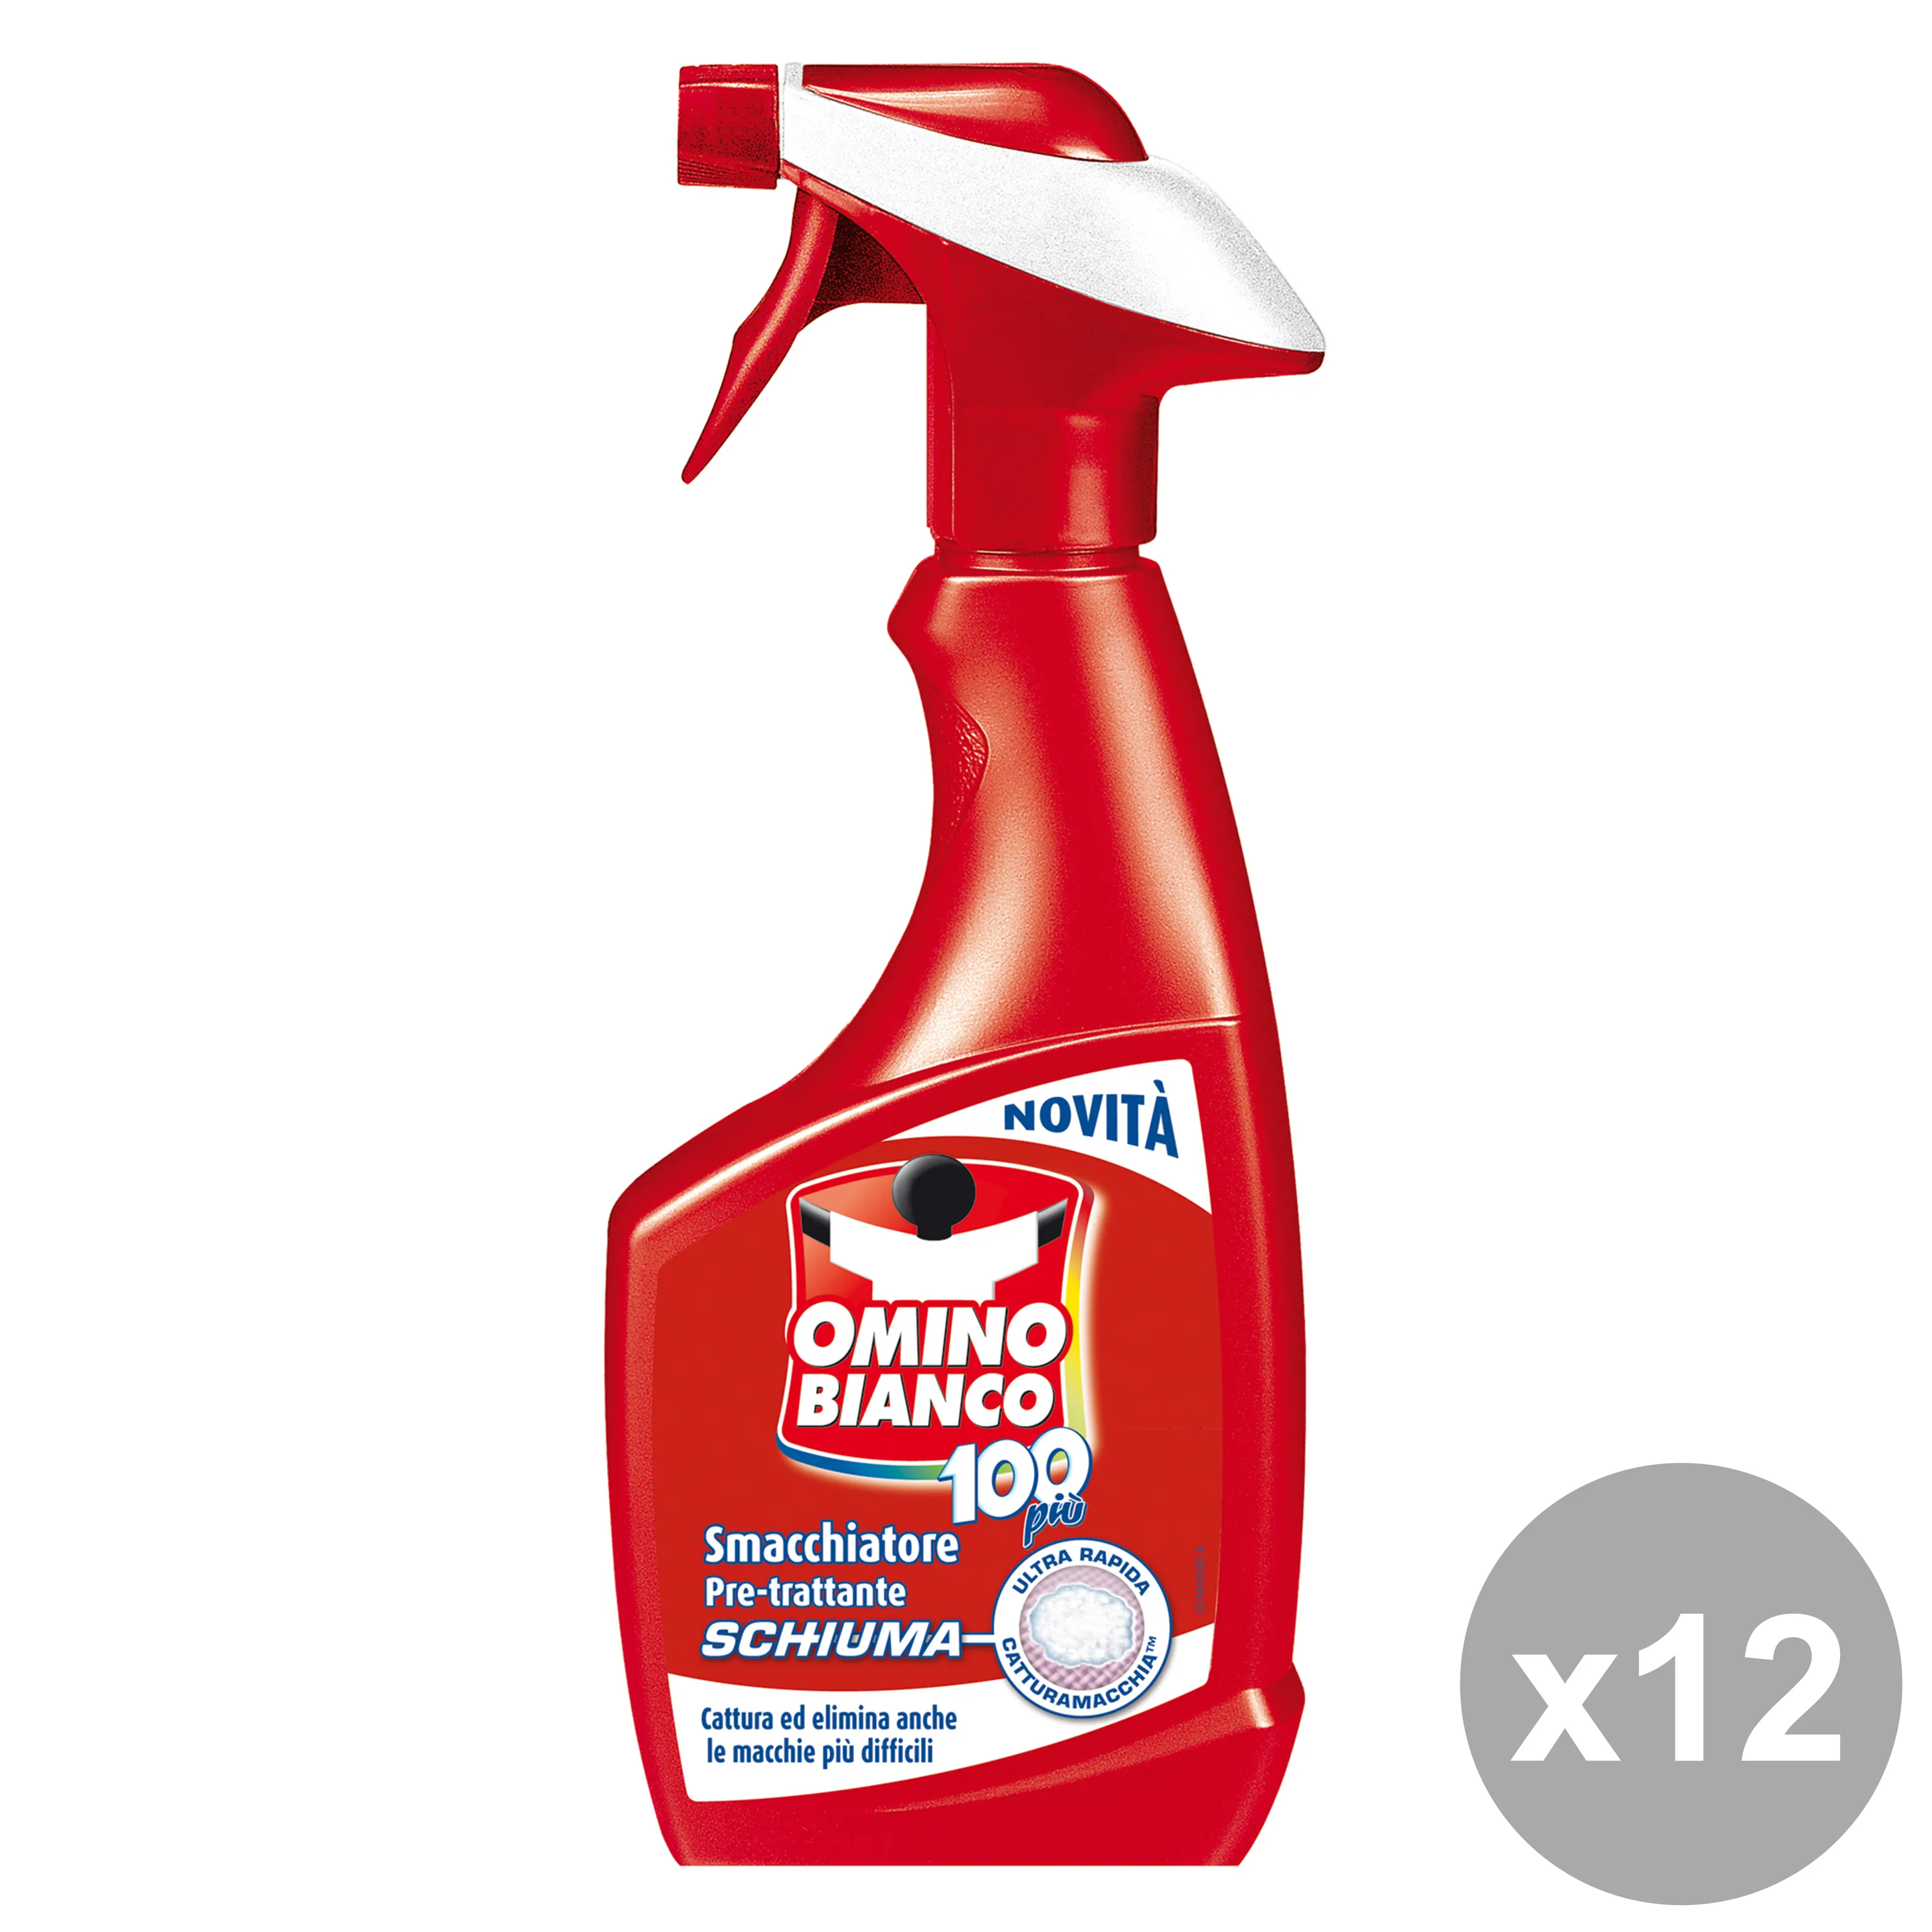 "OMINO BIANCO Set  12 Smacchiatore Schiuma-Spray 500 Ml. Detergenti Casa"